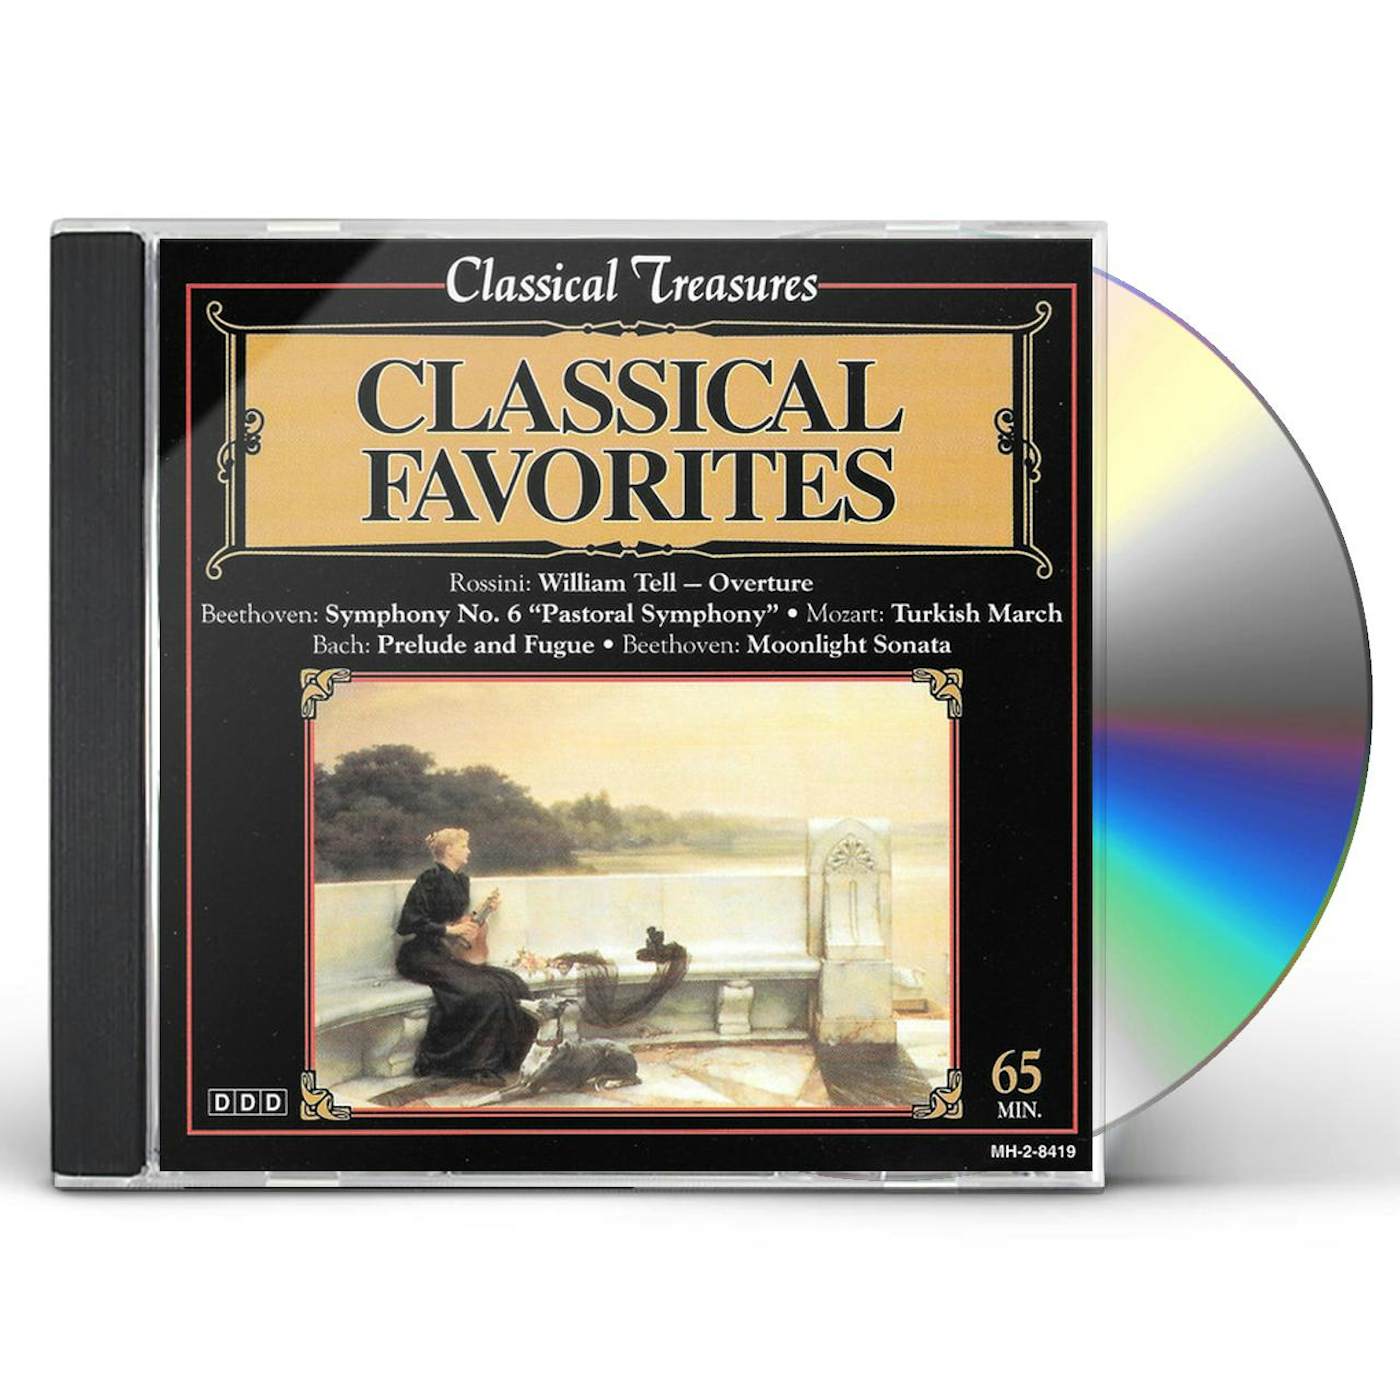 Classical Treasures CLASSICAL FAVORITES CD